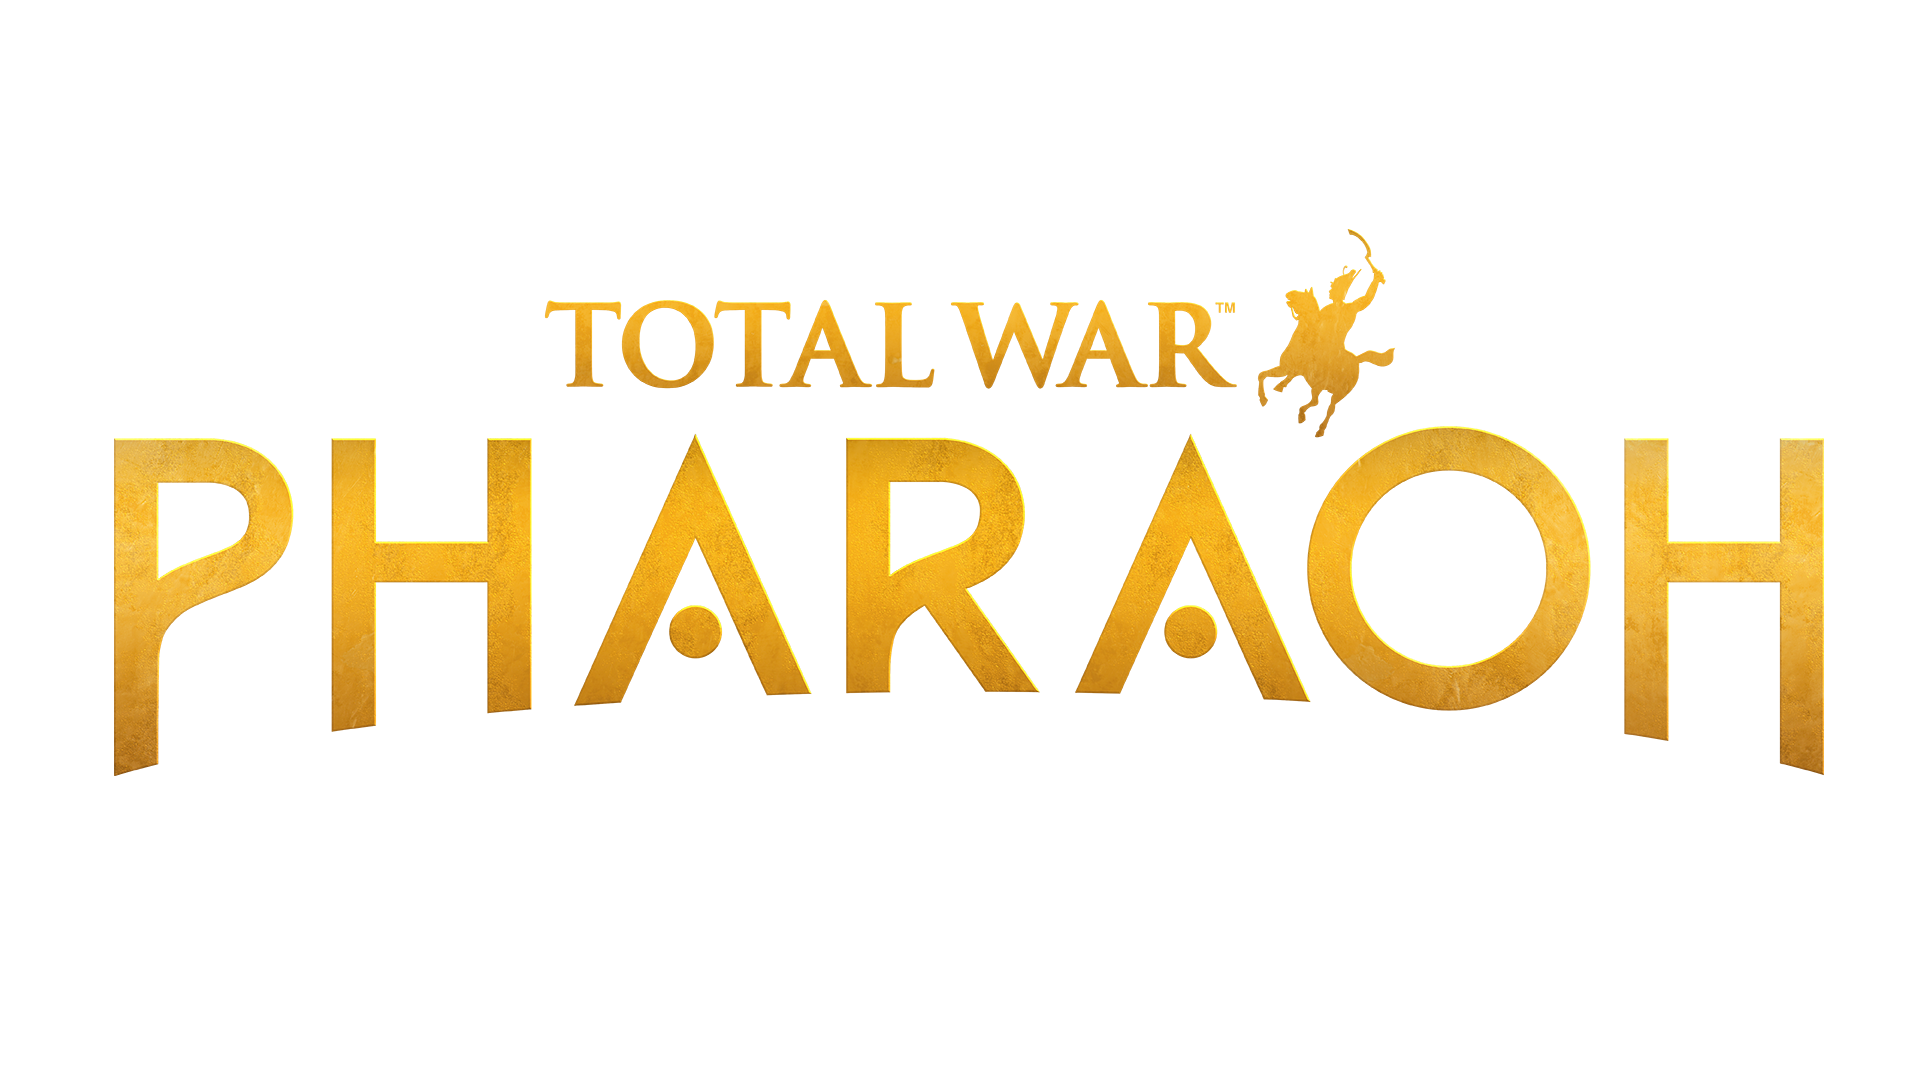 Total War: PHARAOH Updated FAQ - December 2023 - Total War